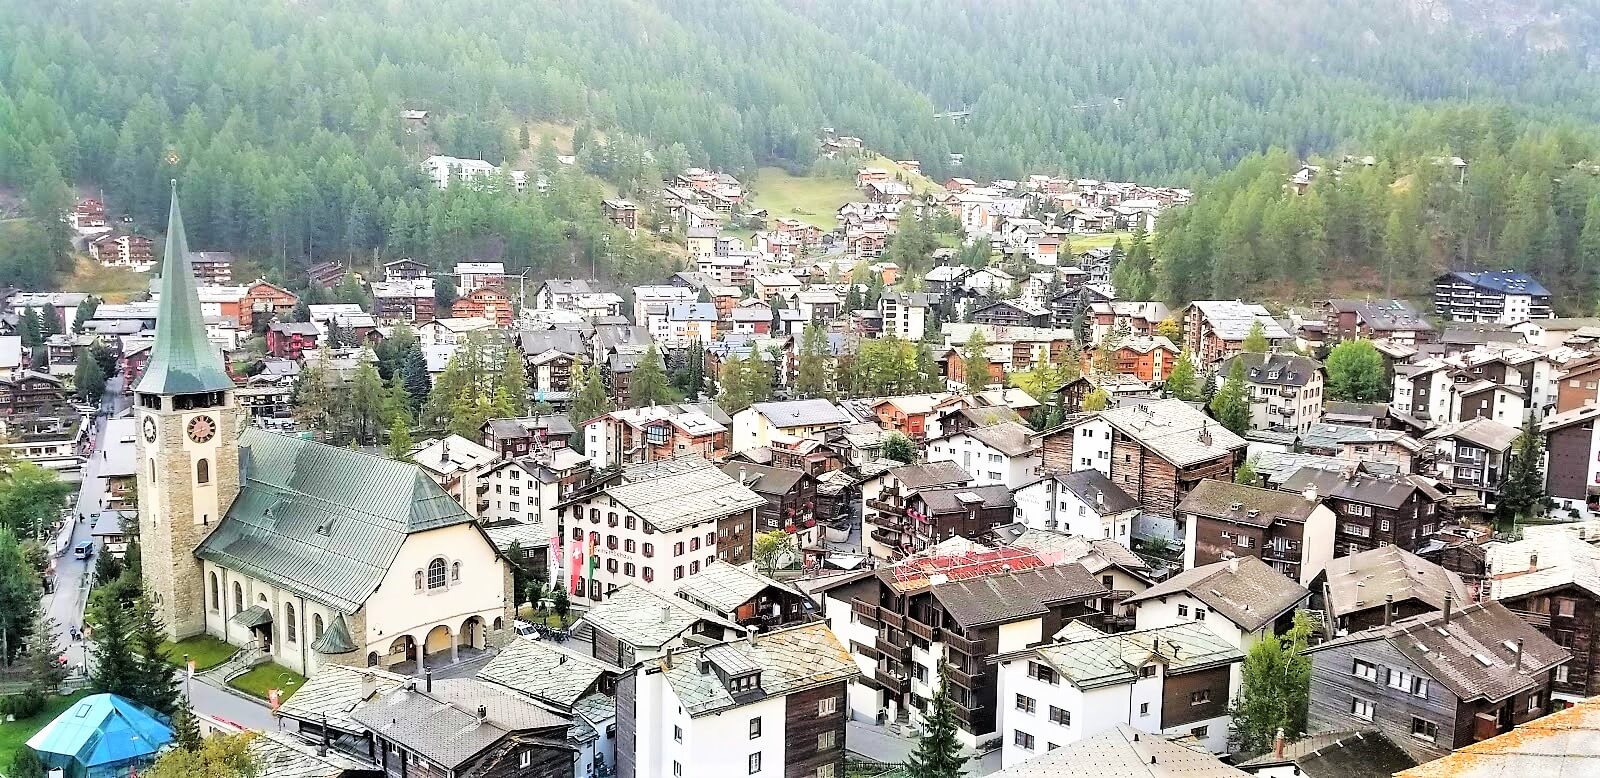 Zermatt REPORT|ツェルマット 視察ブログ